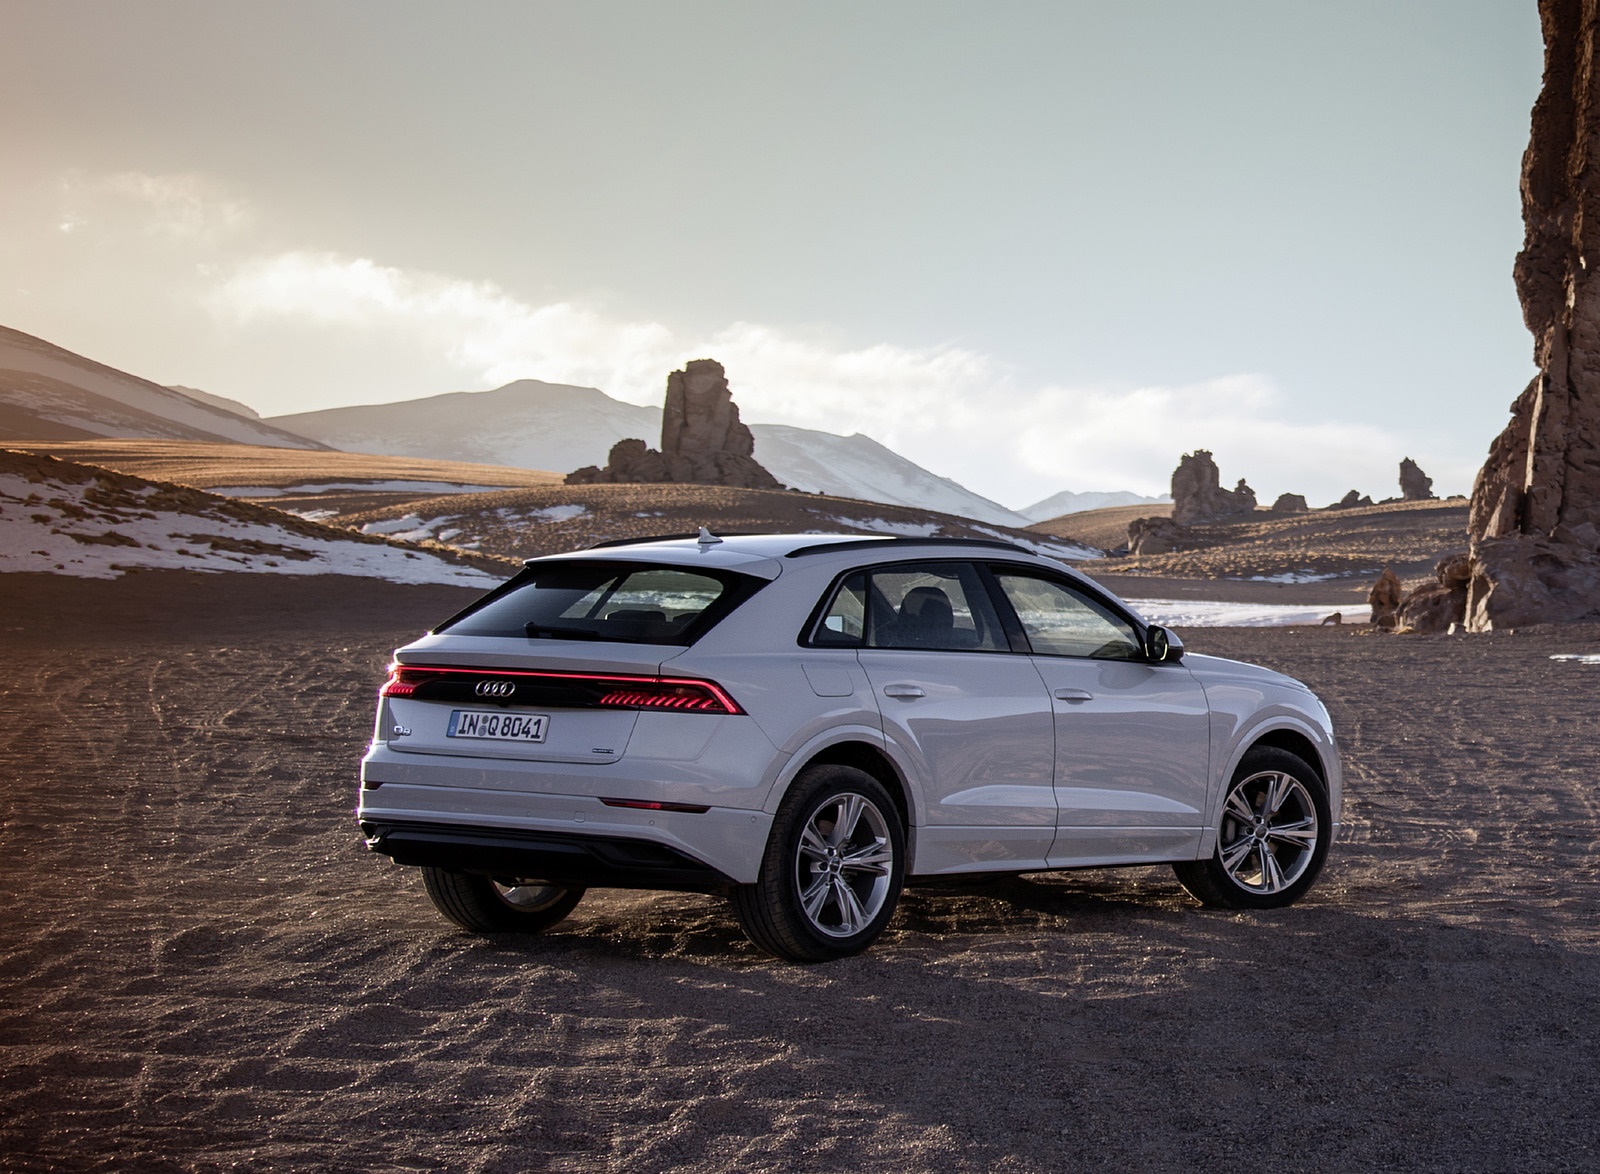 2019 Audi Q8 (Color: Glacier White) Rear Three-Quarter Wallpapers #202 of 260